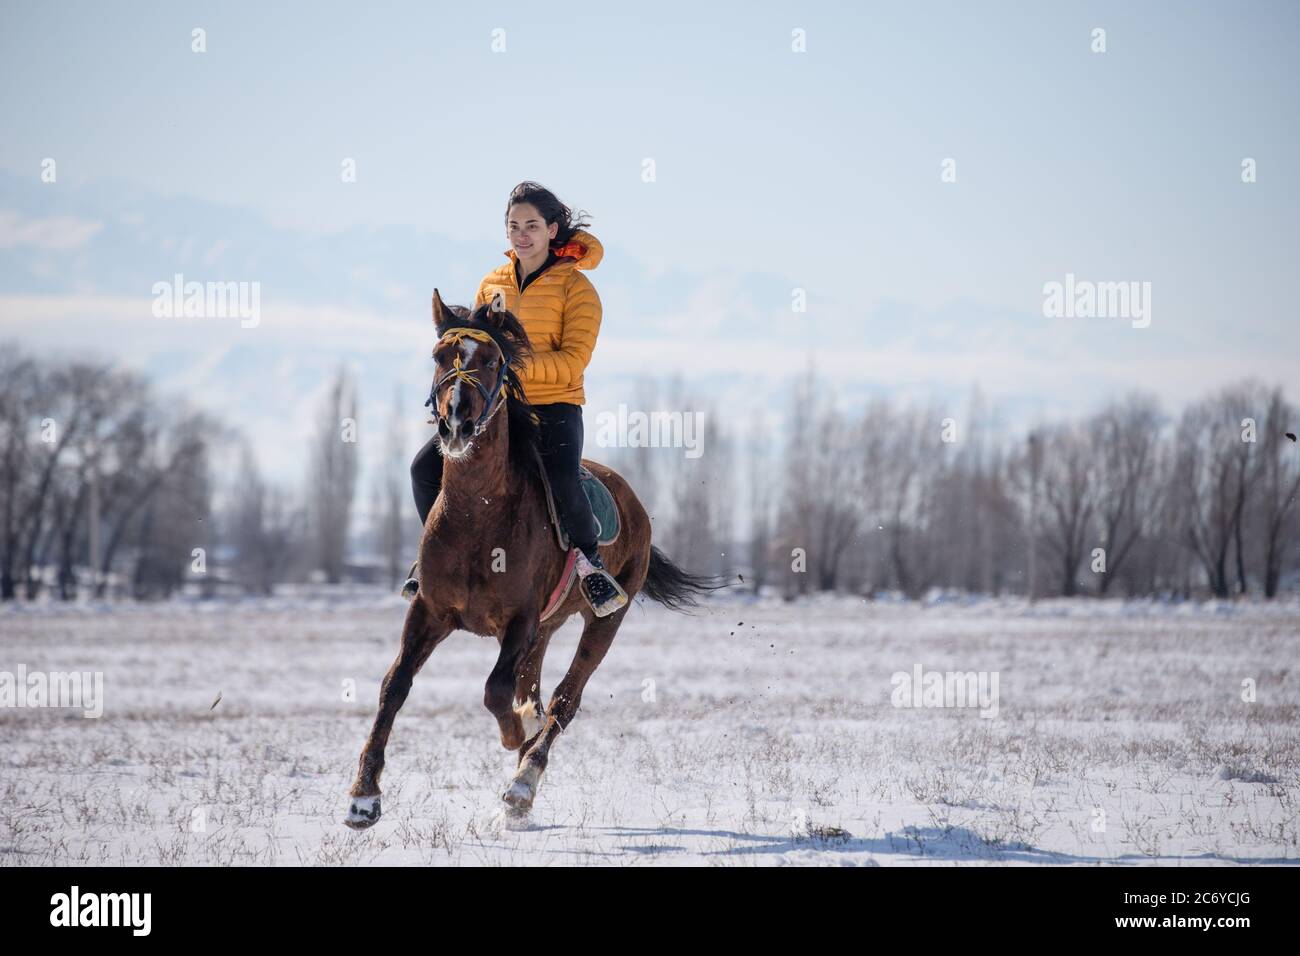 Eine ausländische Touristenin reitet ein einheimisches Pferd während eines Dorffiels Kok Boru im Gebiet Chuy in Kirgisistan in der Nähe der Hauptstadt Bischkek. Stockfoto